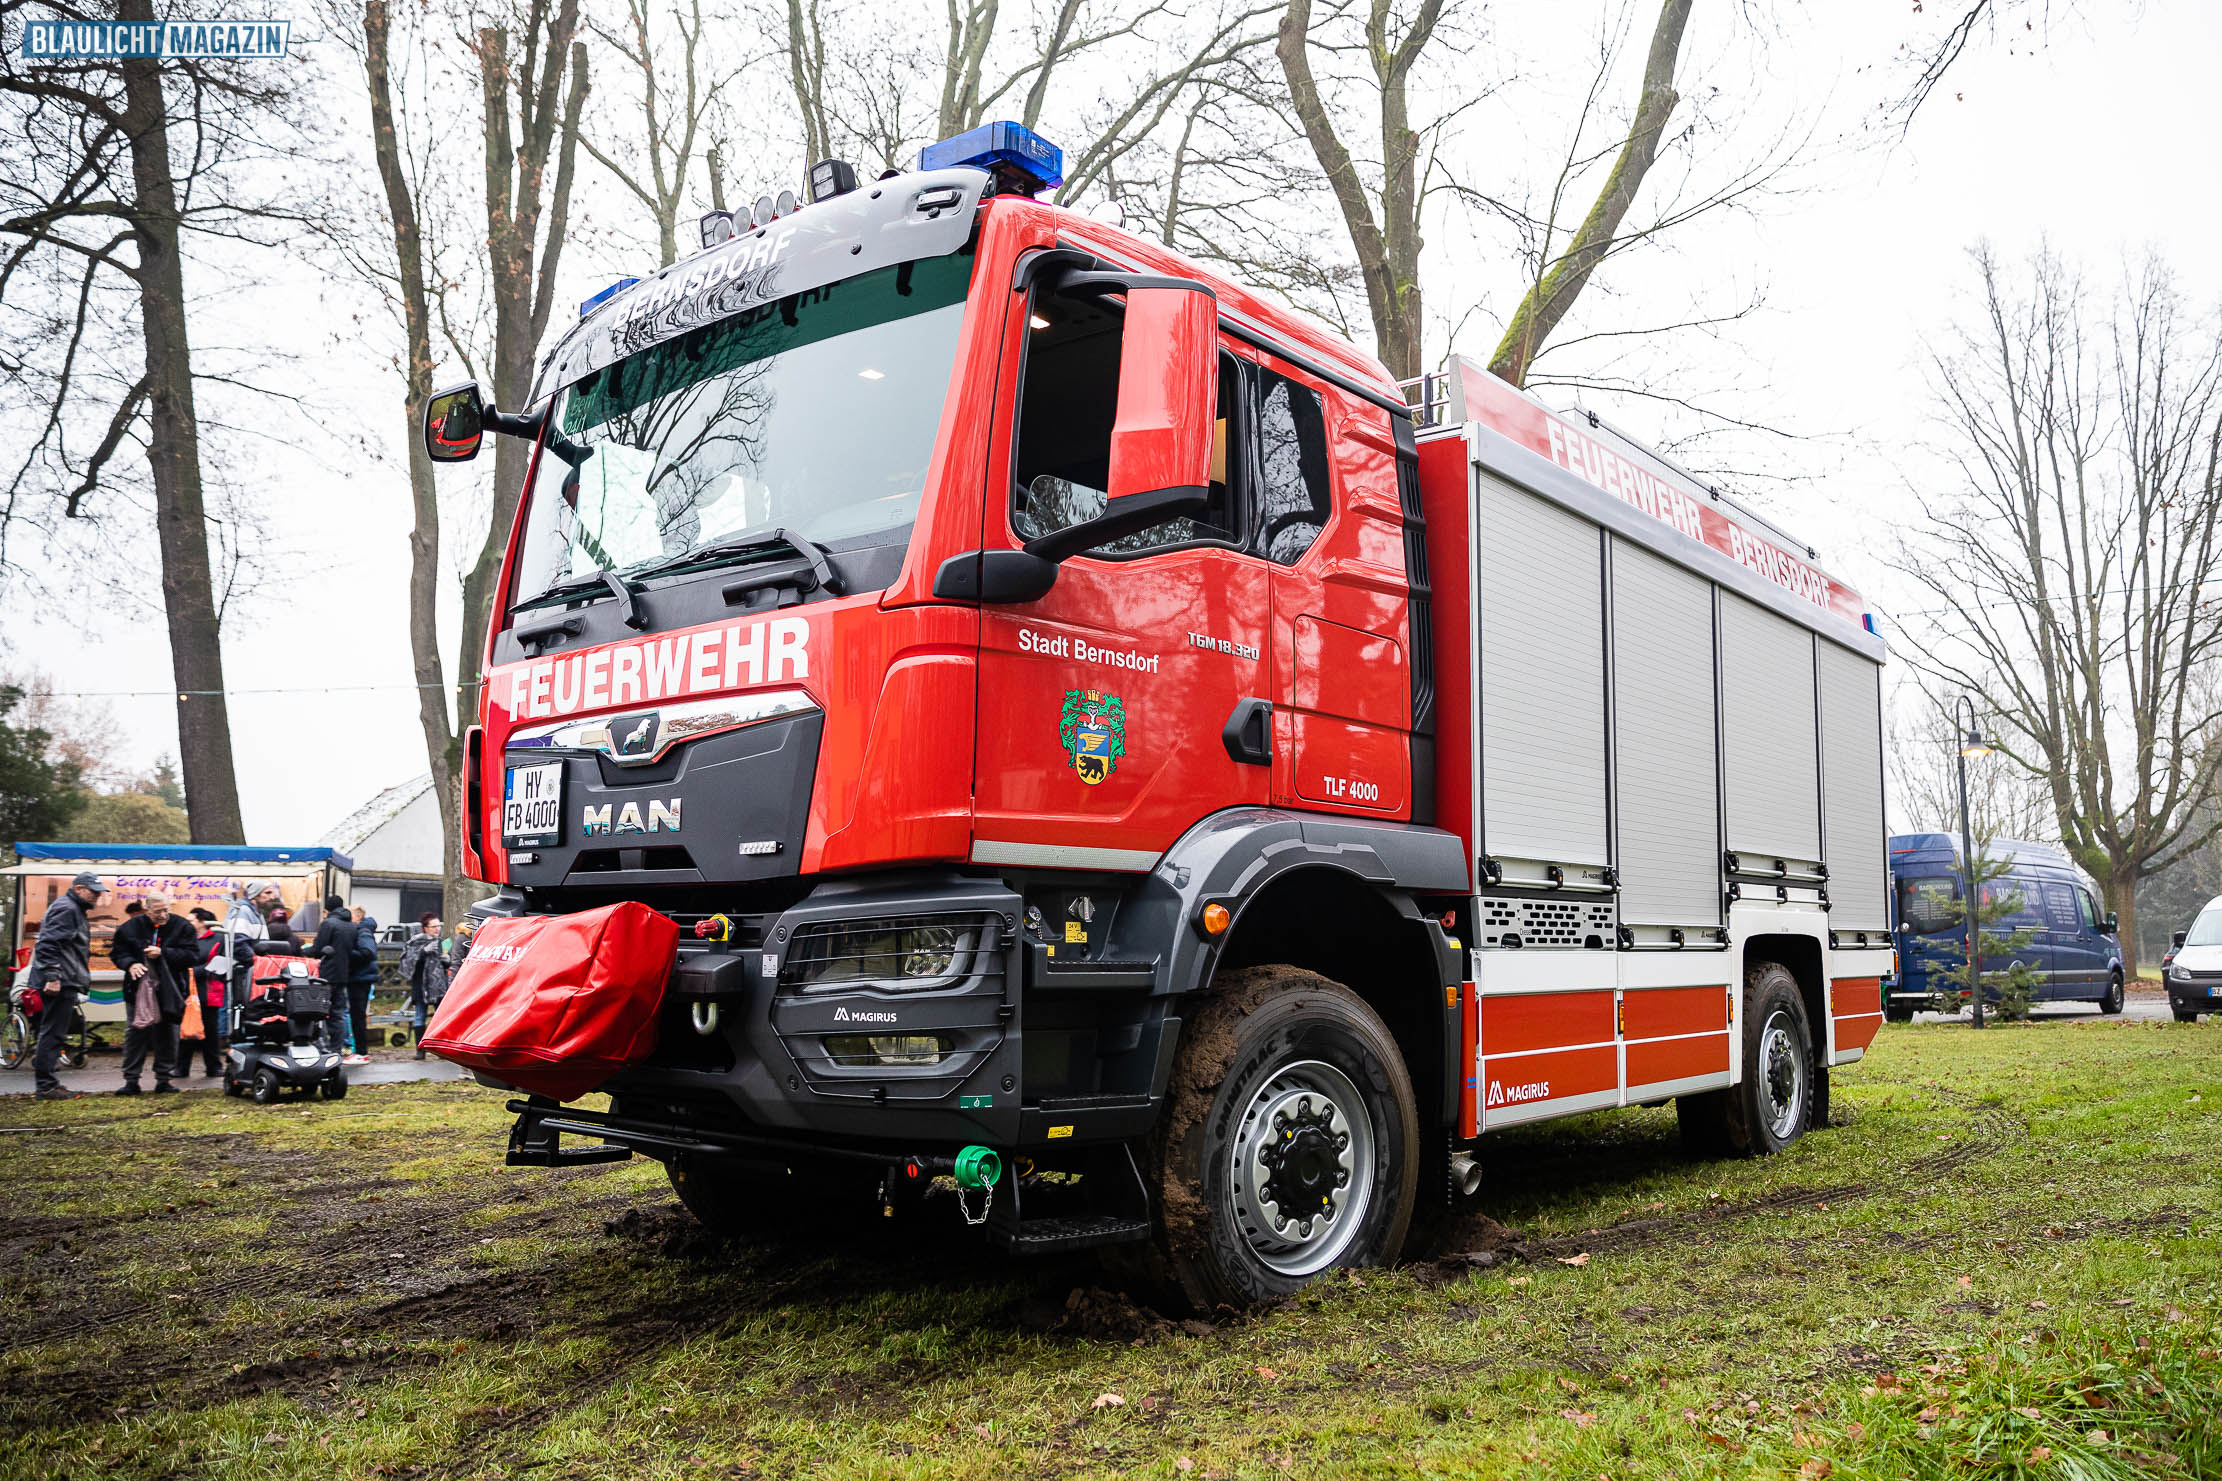 Neues-TLF-4-000-f-r-die-Feuerwehr-Bernsdorf-OL